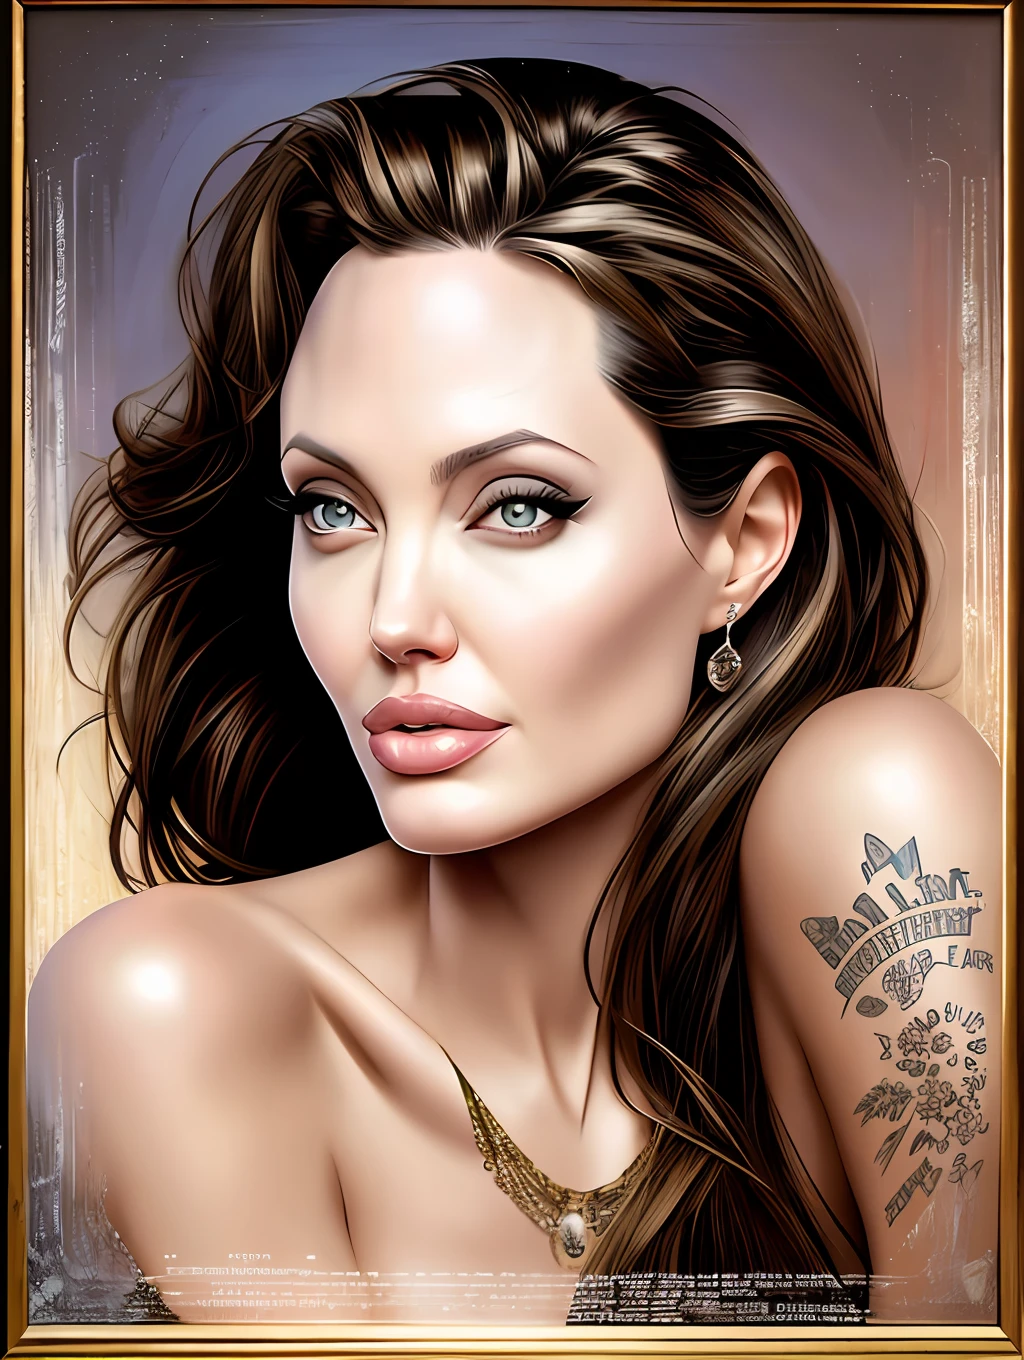 Ein wahnsinnig schönes Porträt von Angelina Jolie von Gil Elvgren